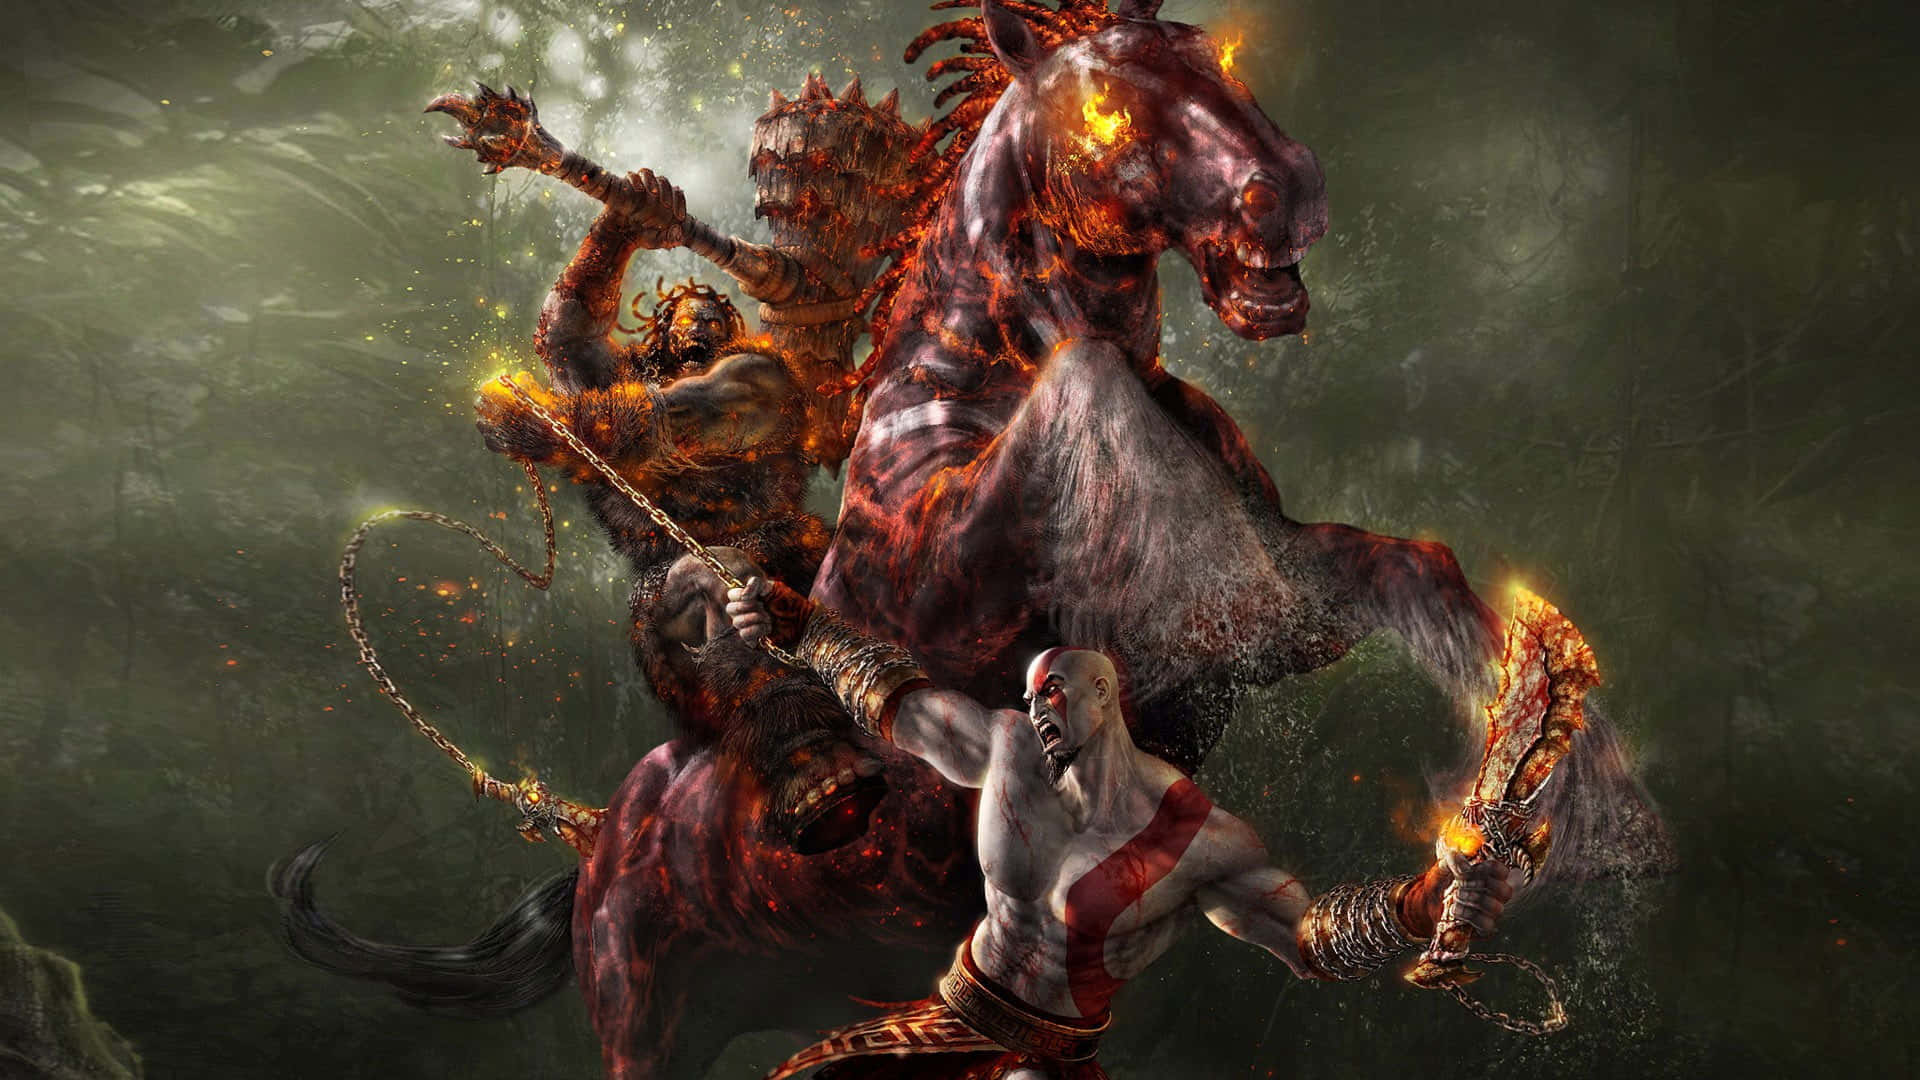 Caption: God of War Kratos and Atreus Wallpaper